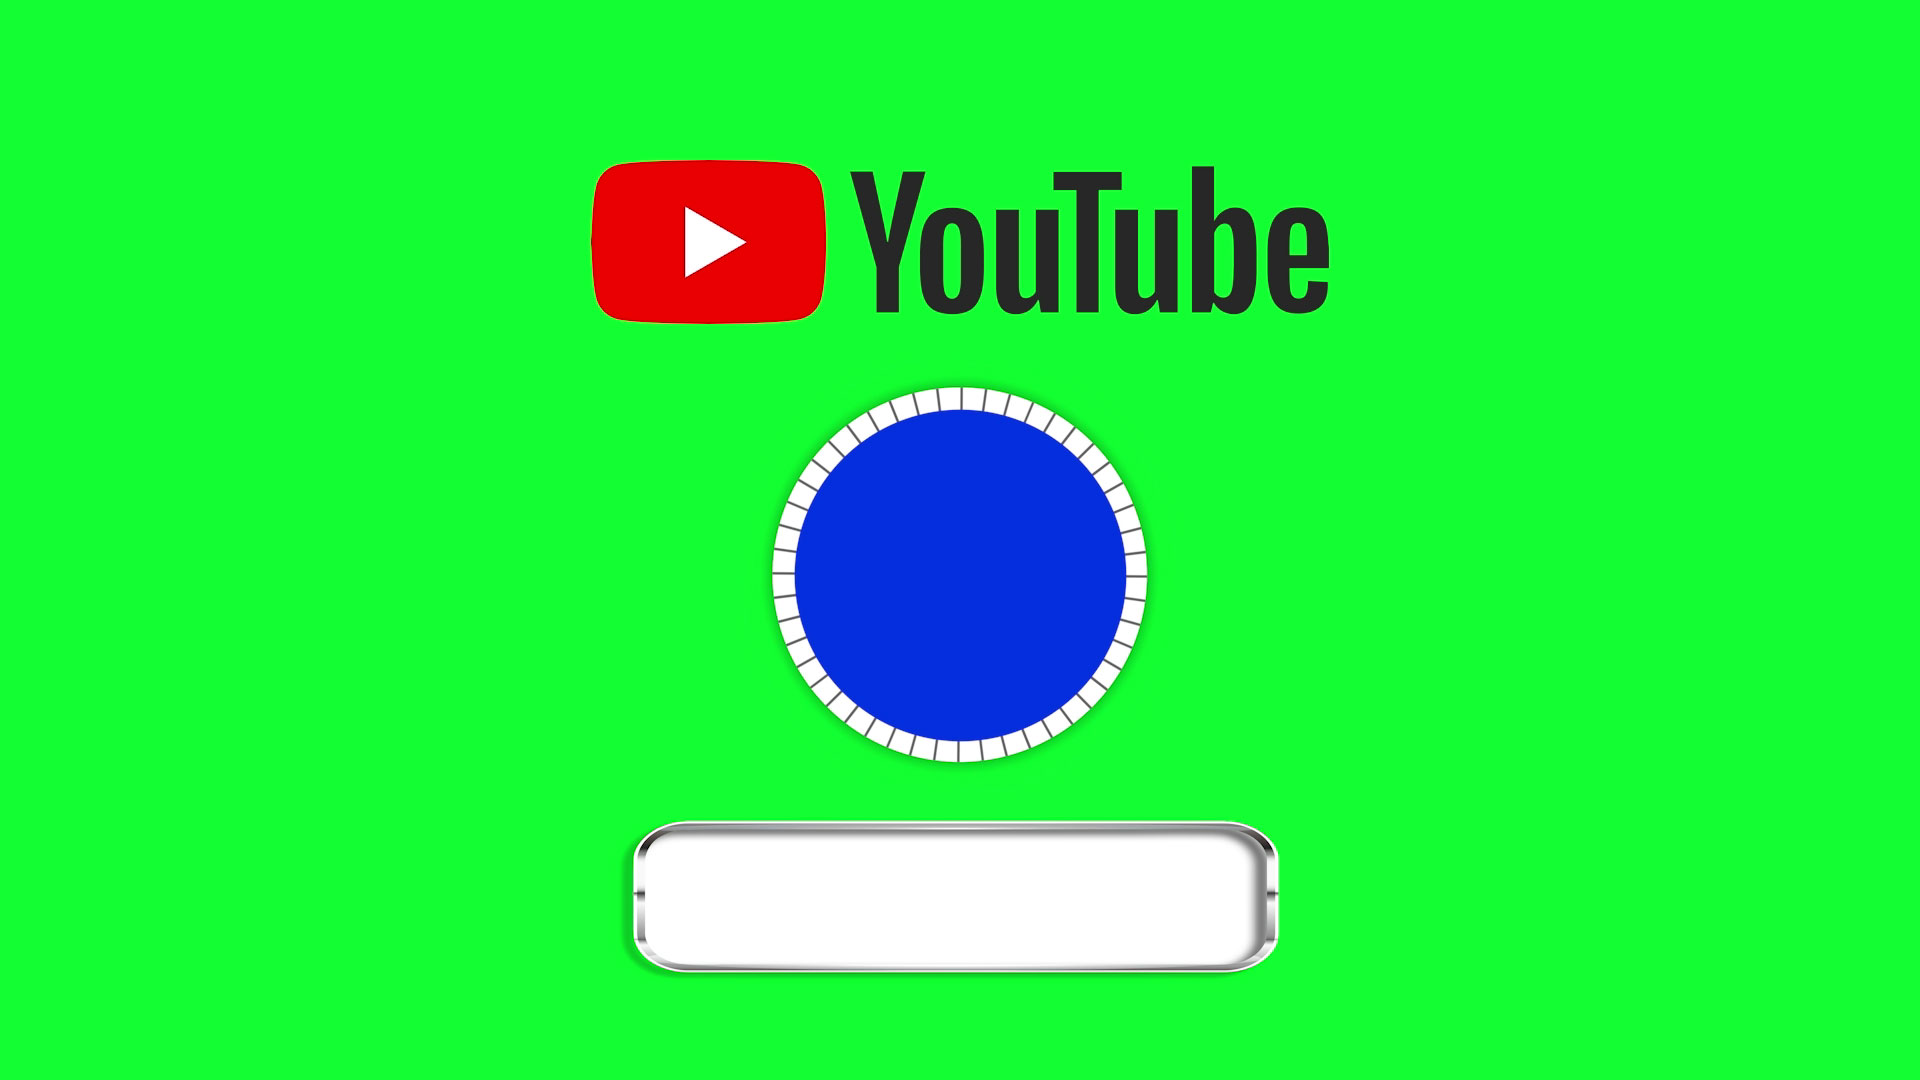 YouTube Channel Intro là đoạn giới thiệu của từng kênh trên YouTube, chúng ta có thể dùng để tạo sự chuyên nghiệp và thu hút người xem. Hãy tìm hiểu thêm về những đoạn Intro tuyệt vời nhất trên YouTube bằng cách xem hình ảnh được chia sẻ.